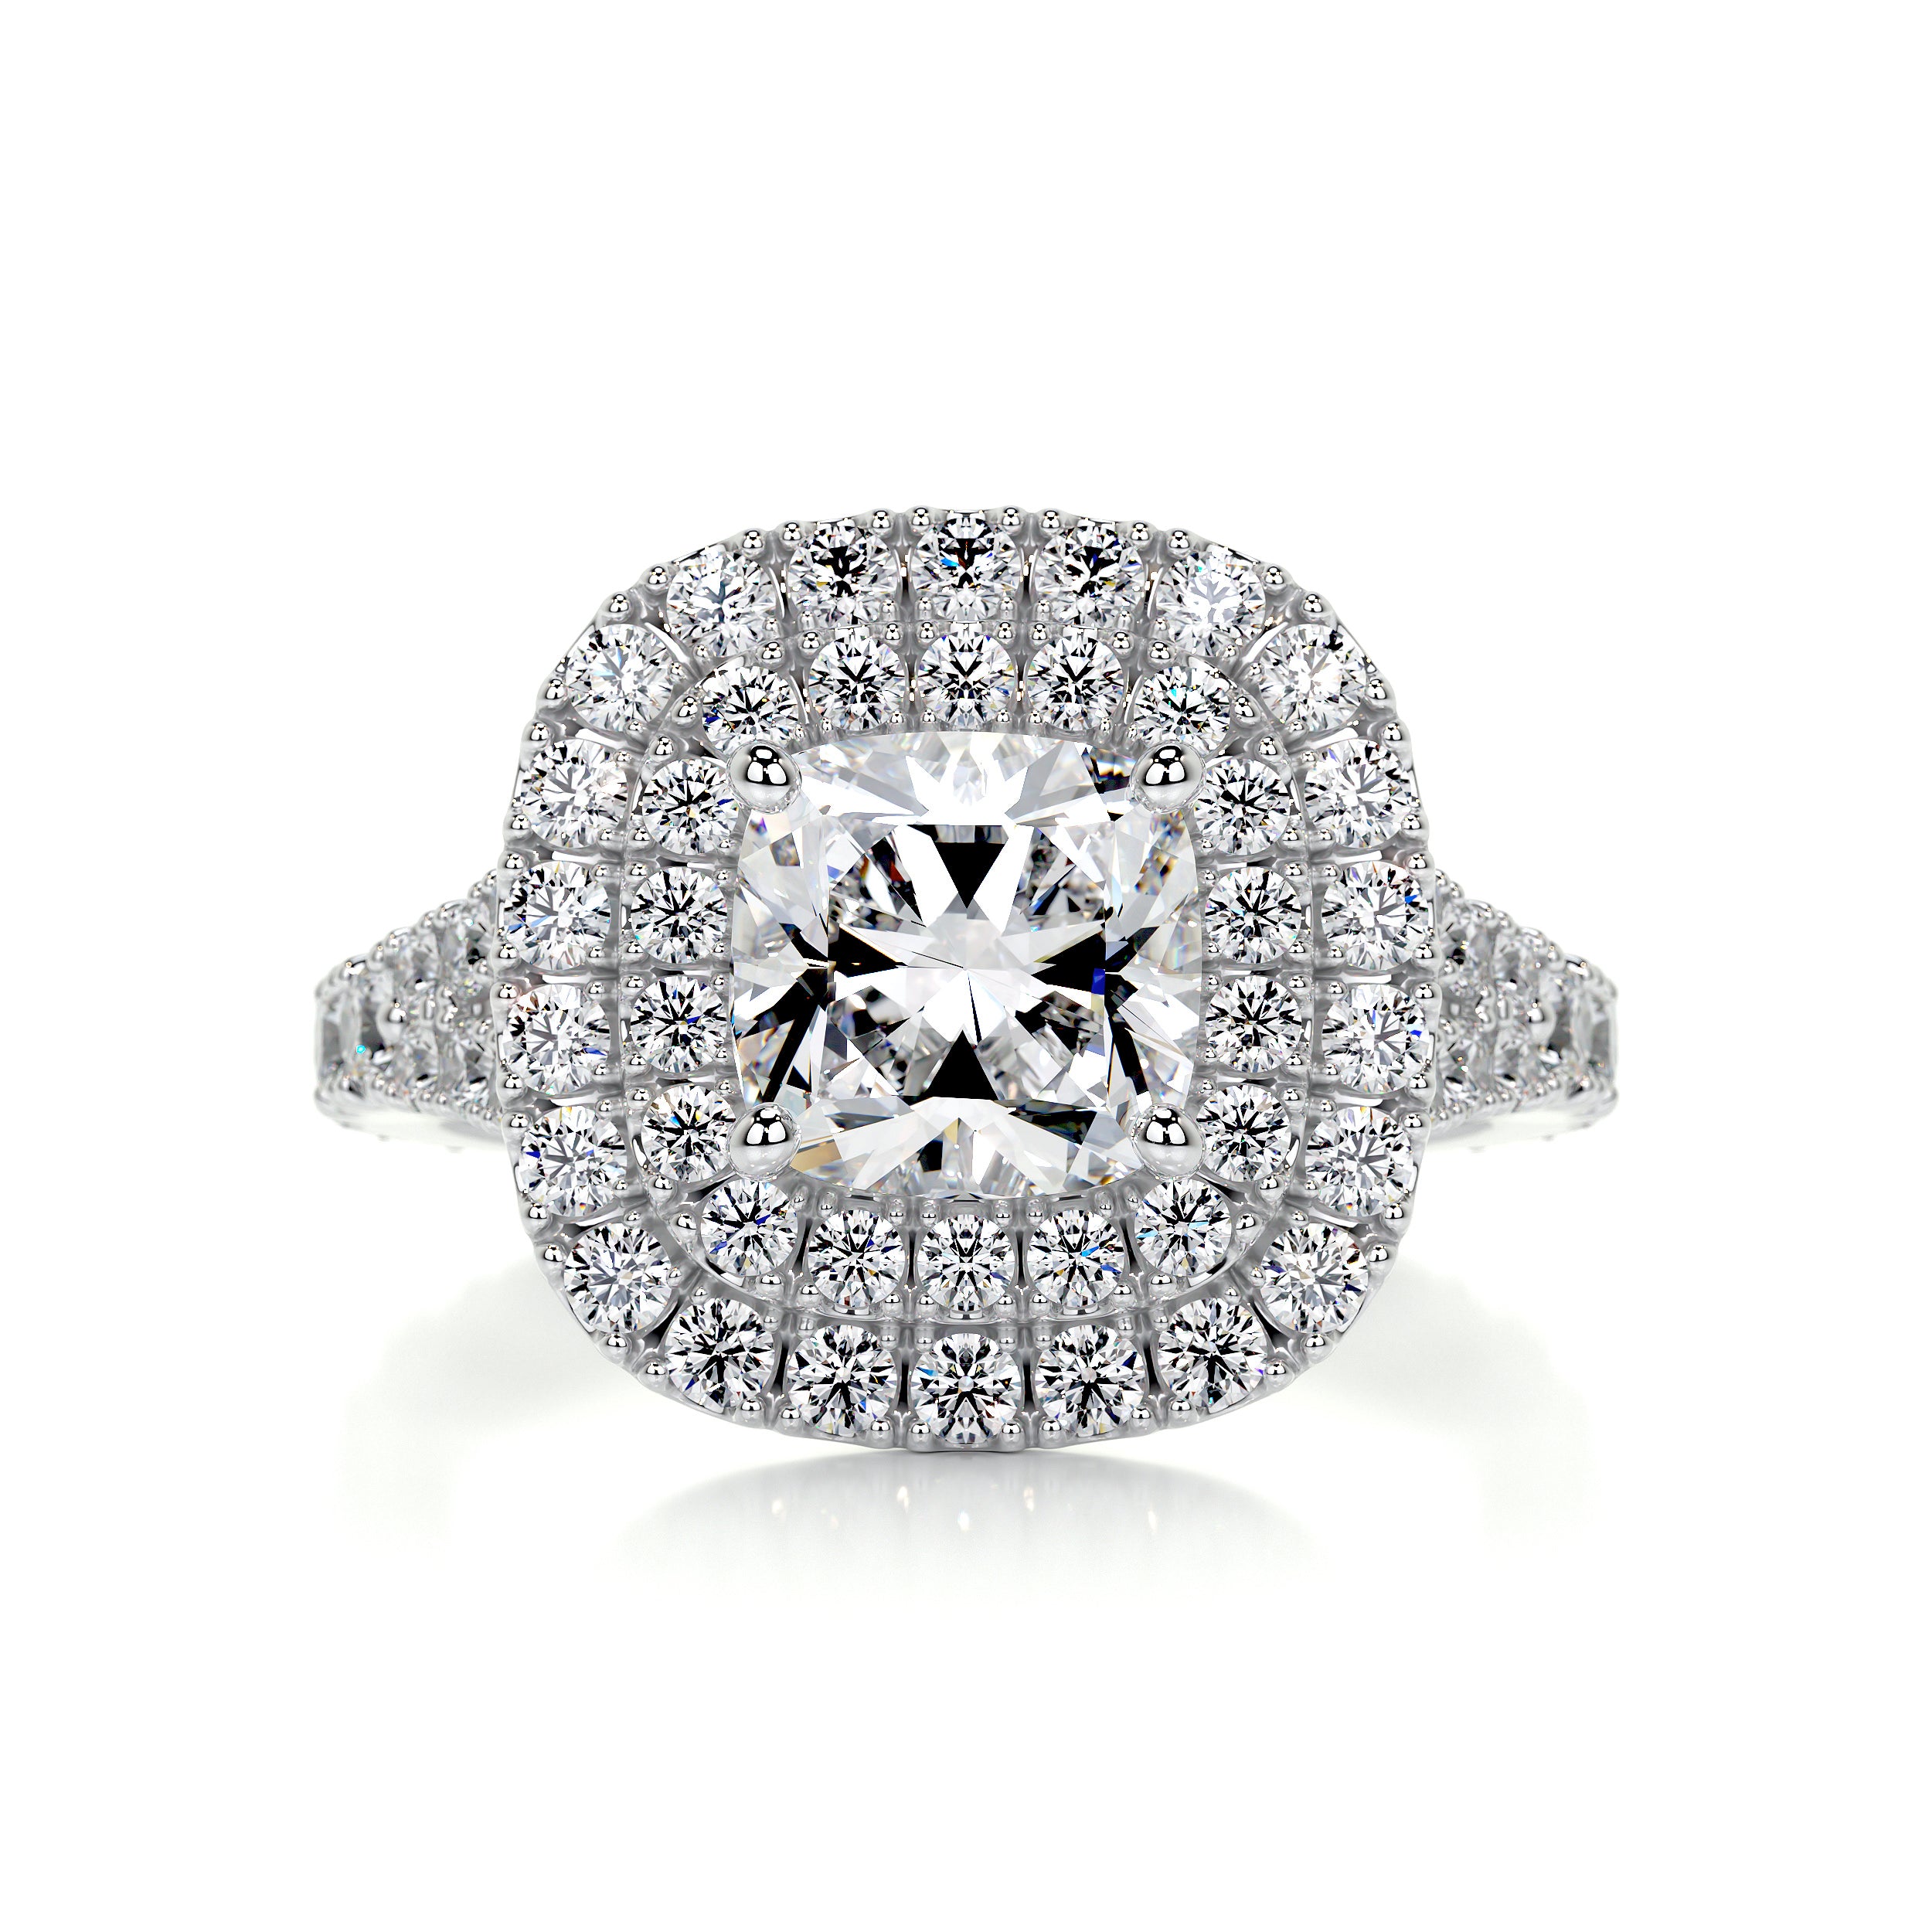 Tina Diamond Engagement Ring   (2.5 Carat) -14K White Gold